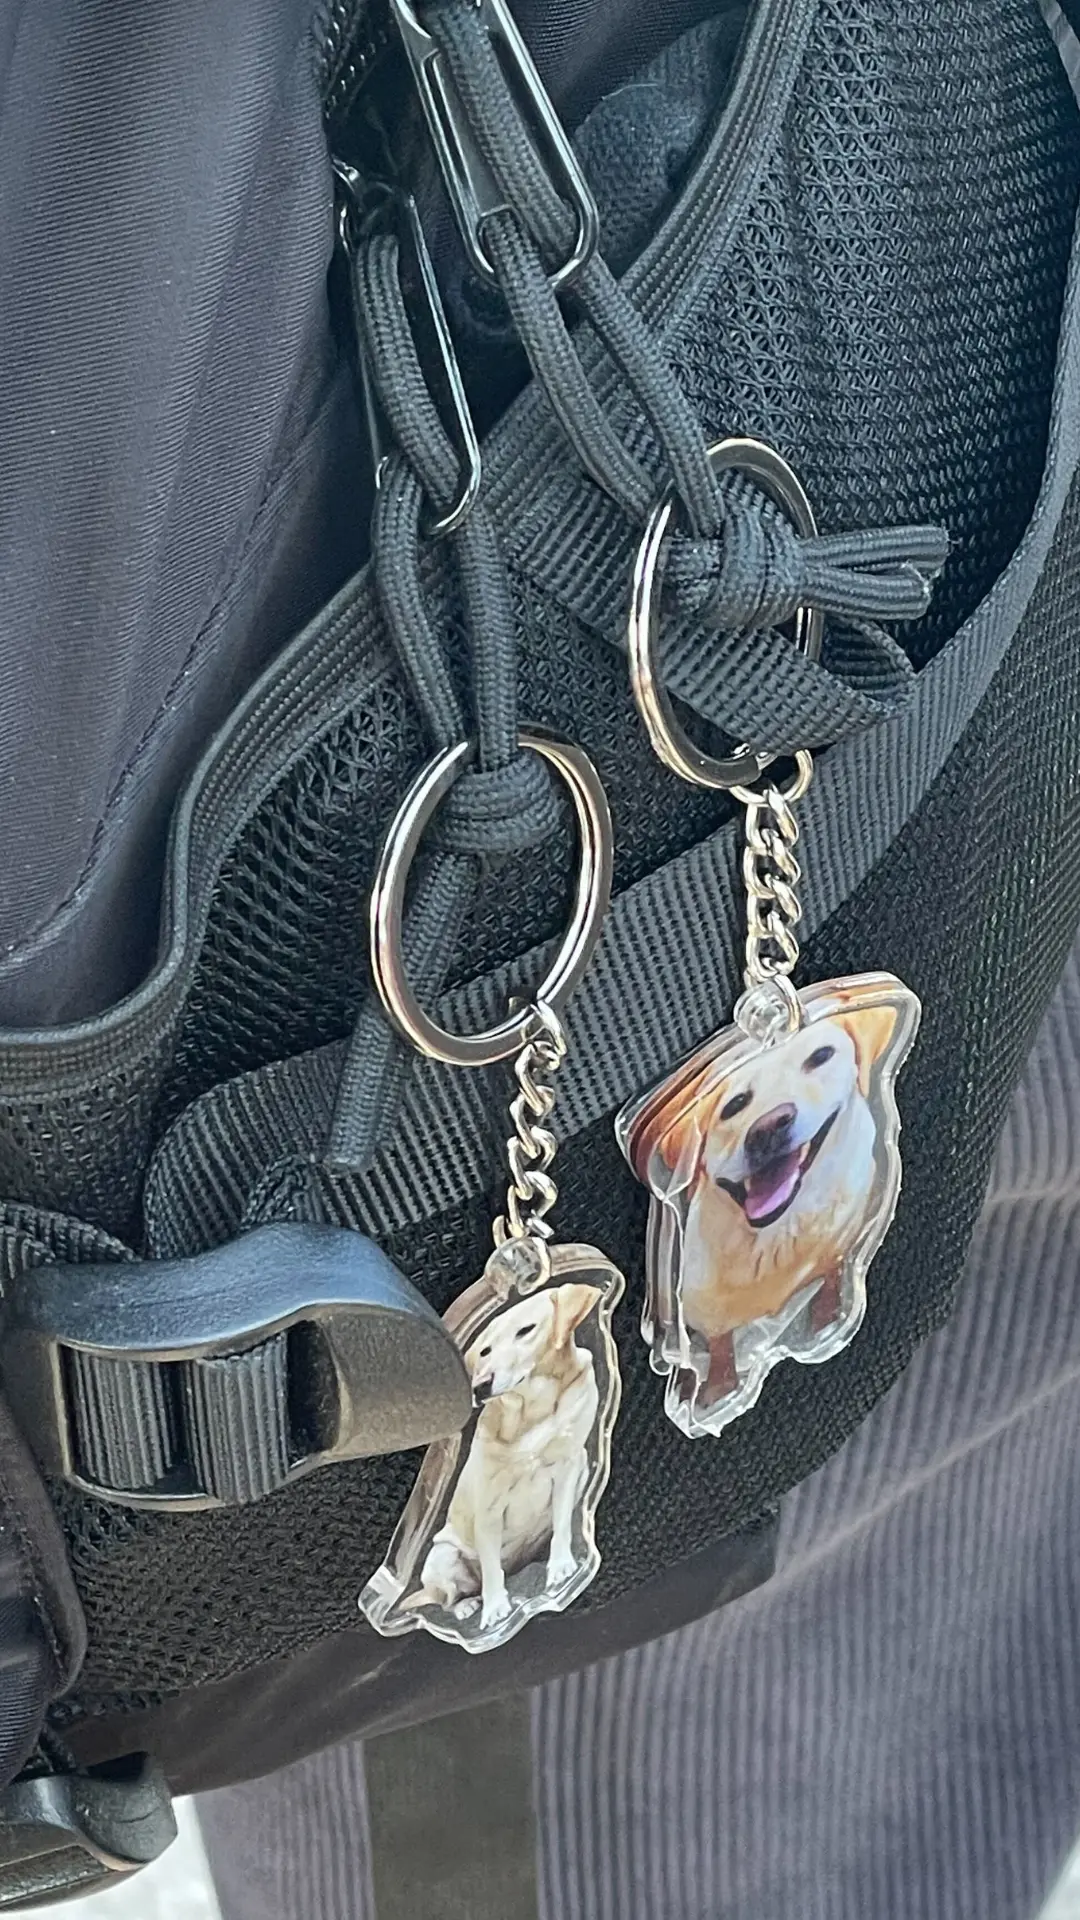 与我交谈的一位中国移民的背包上挂着宠物钥匙扣。图源：华促会